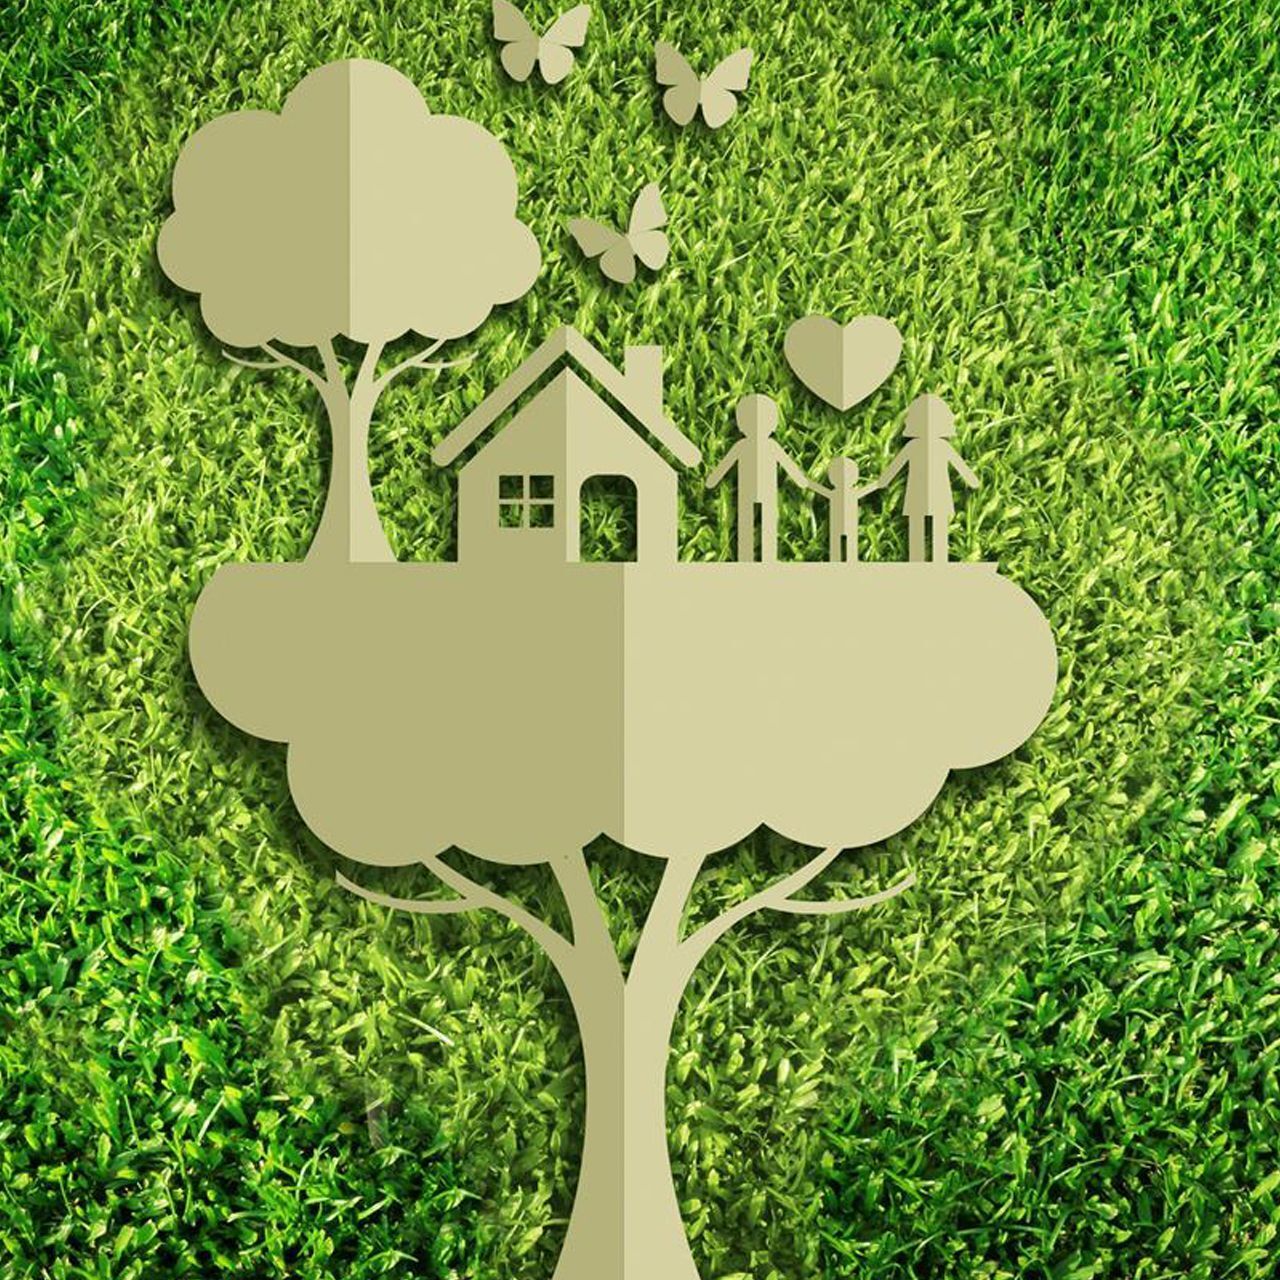 La transizione ecologica è perseguibile a piccoli passi e con la collaborazione di tutti per progredire verso un’economia “green” e per lasciarsi la vecchia società consumistica e sfruttatrice